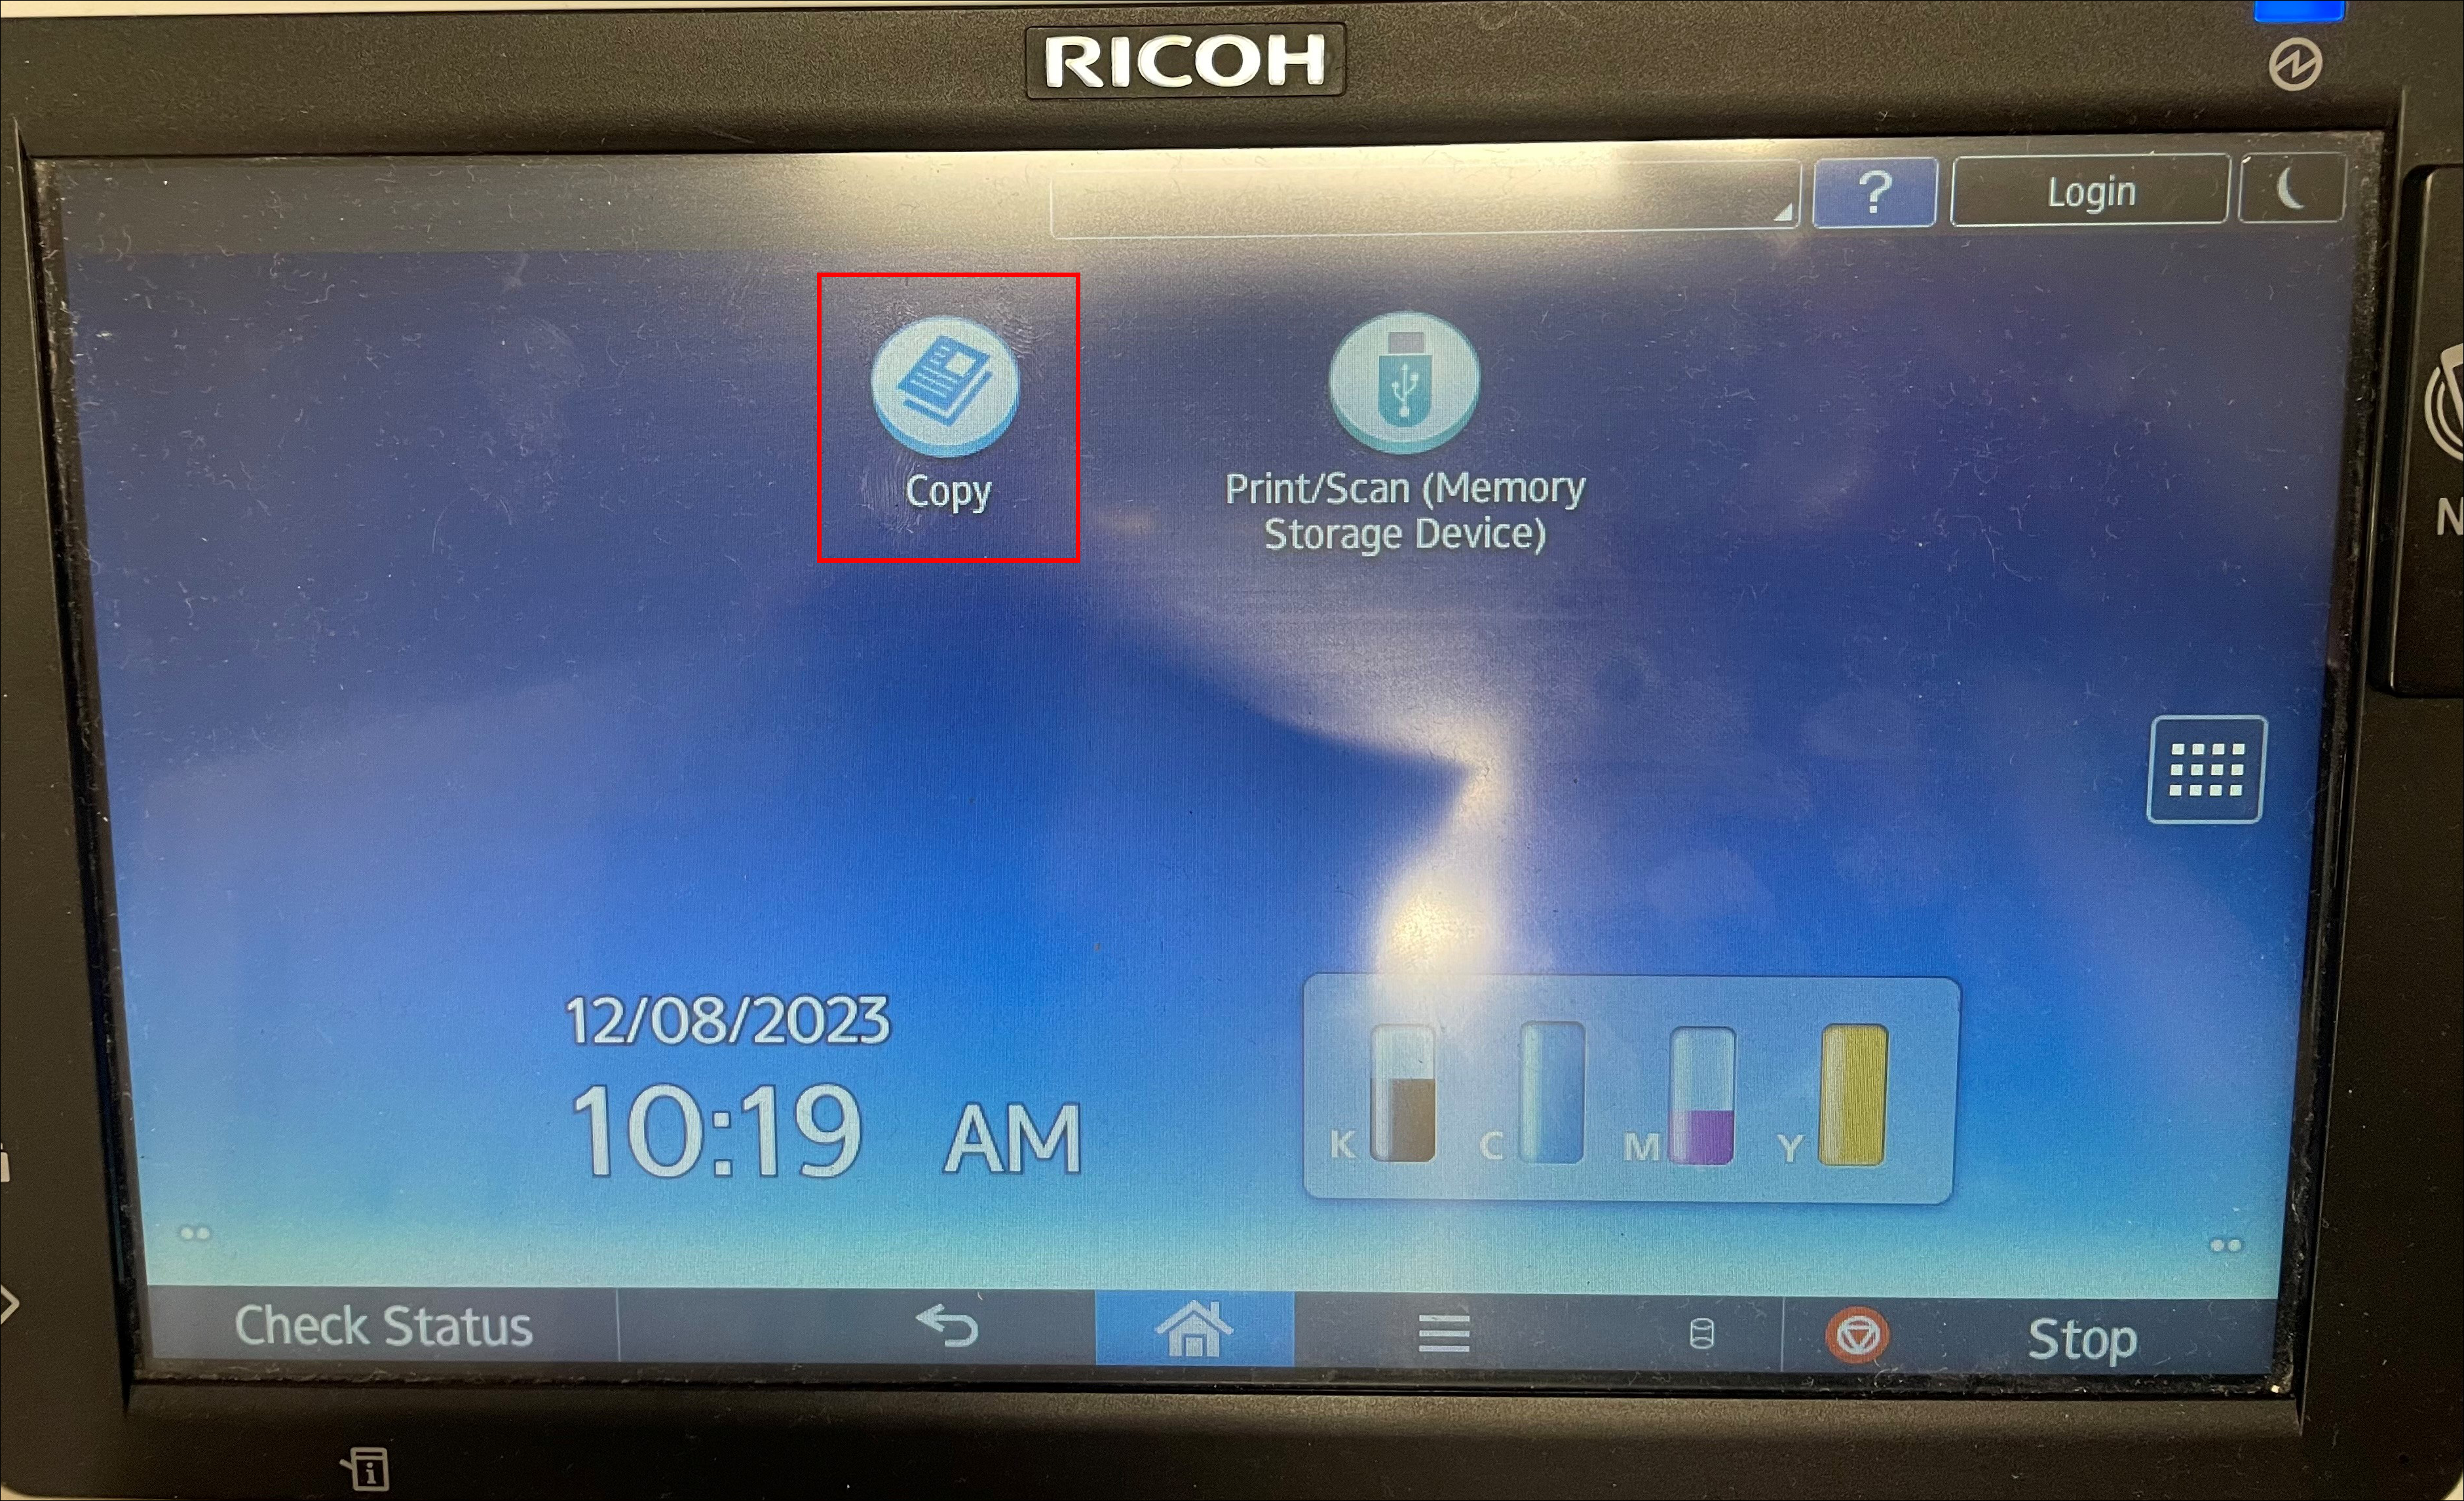 Ricoh kiosk printer copy button